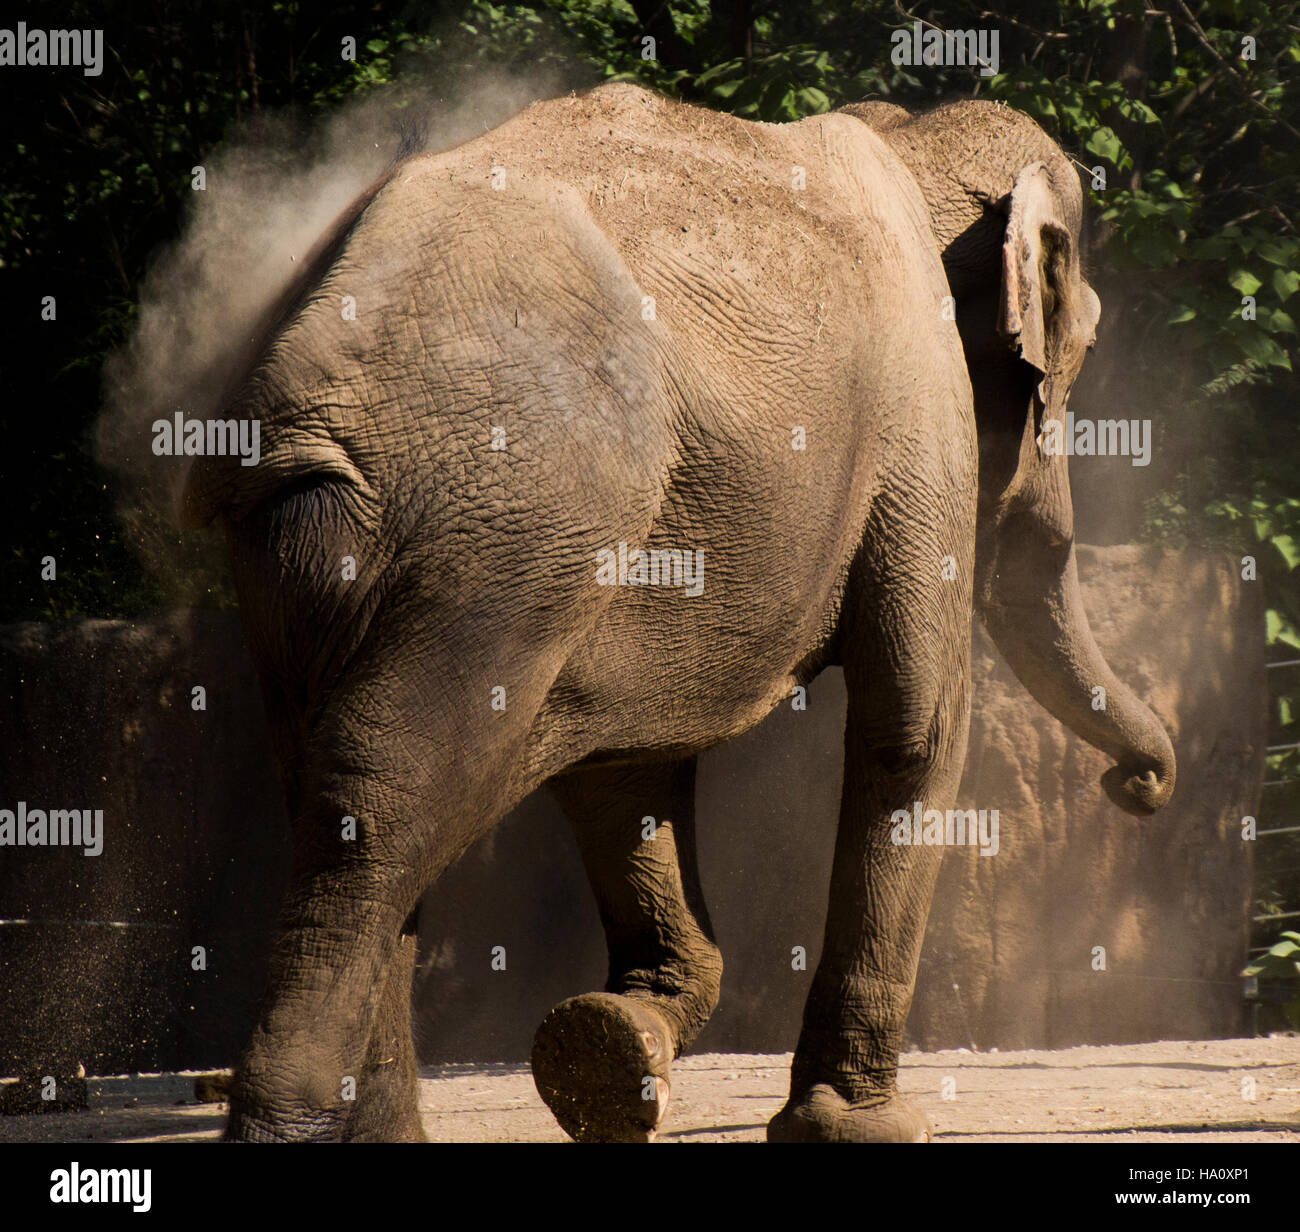 Elephant open mouth -Fotos und -Bildmaterial in hoher Auflösung - Seite 2 -  Alamy